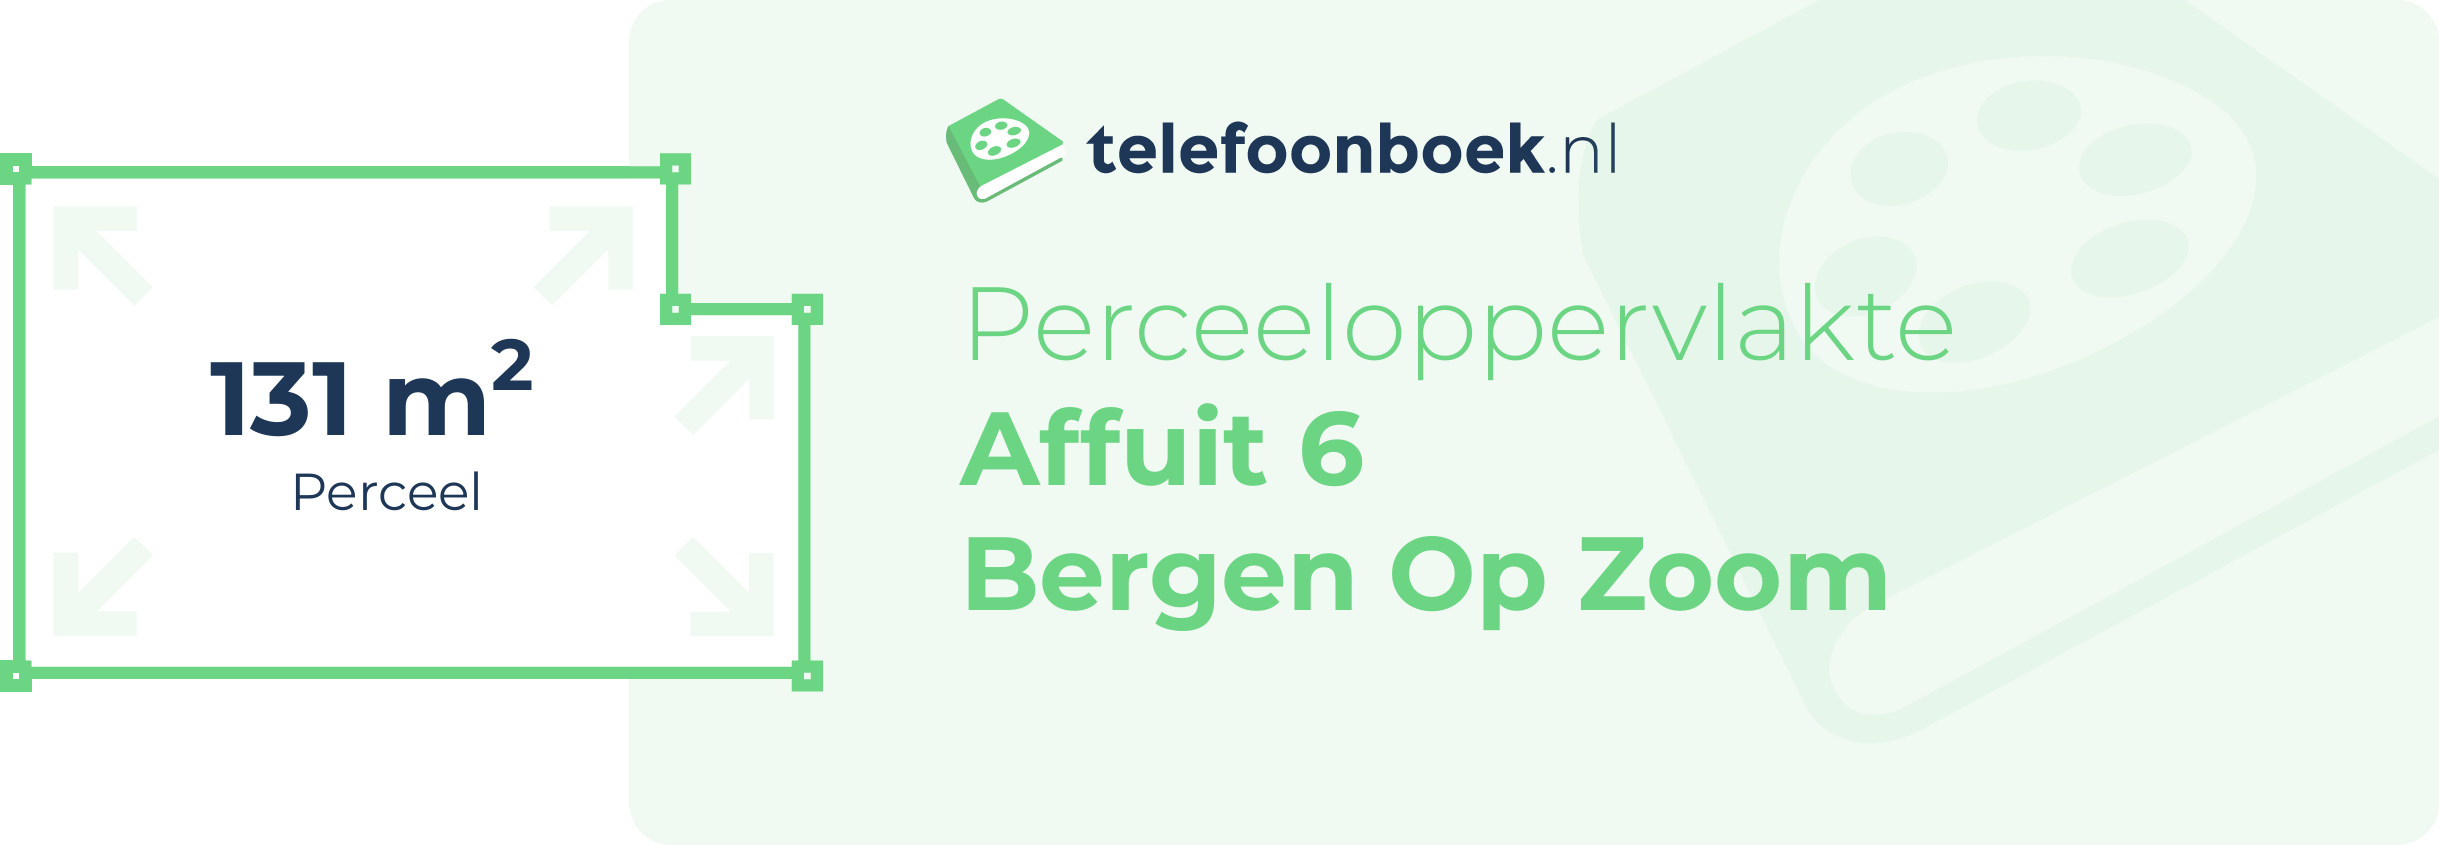 Perceeloppervlakte Affuit 6 Bergen Op Zoom